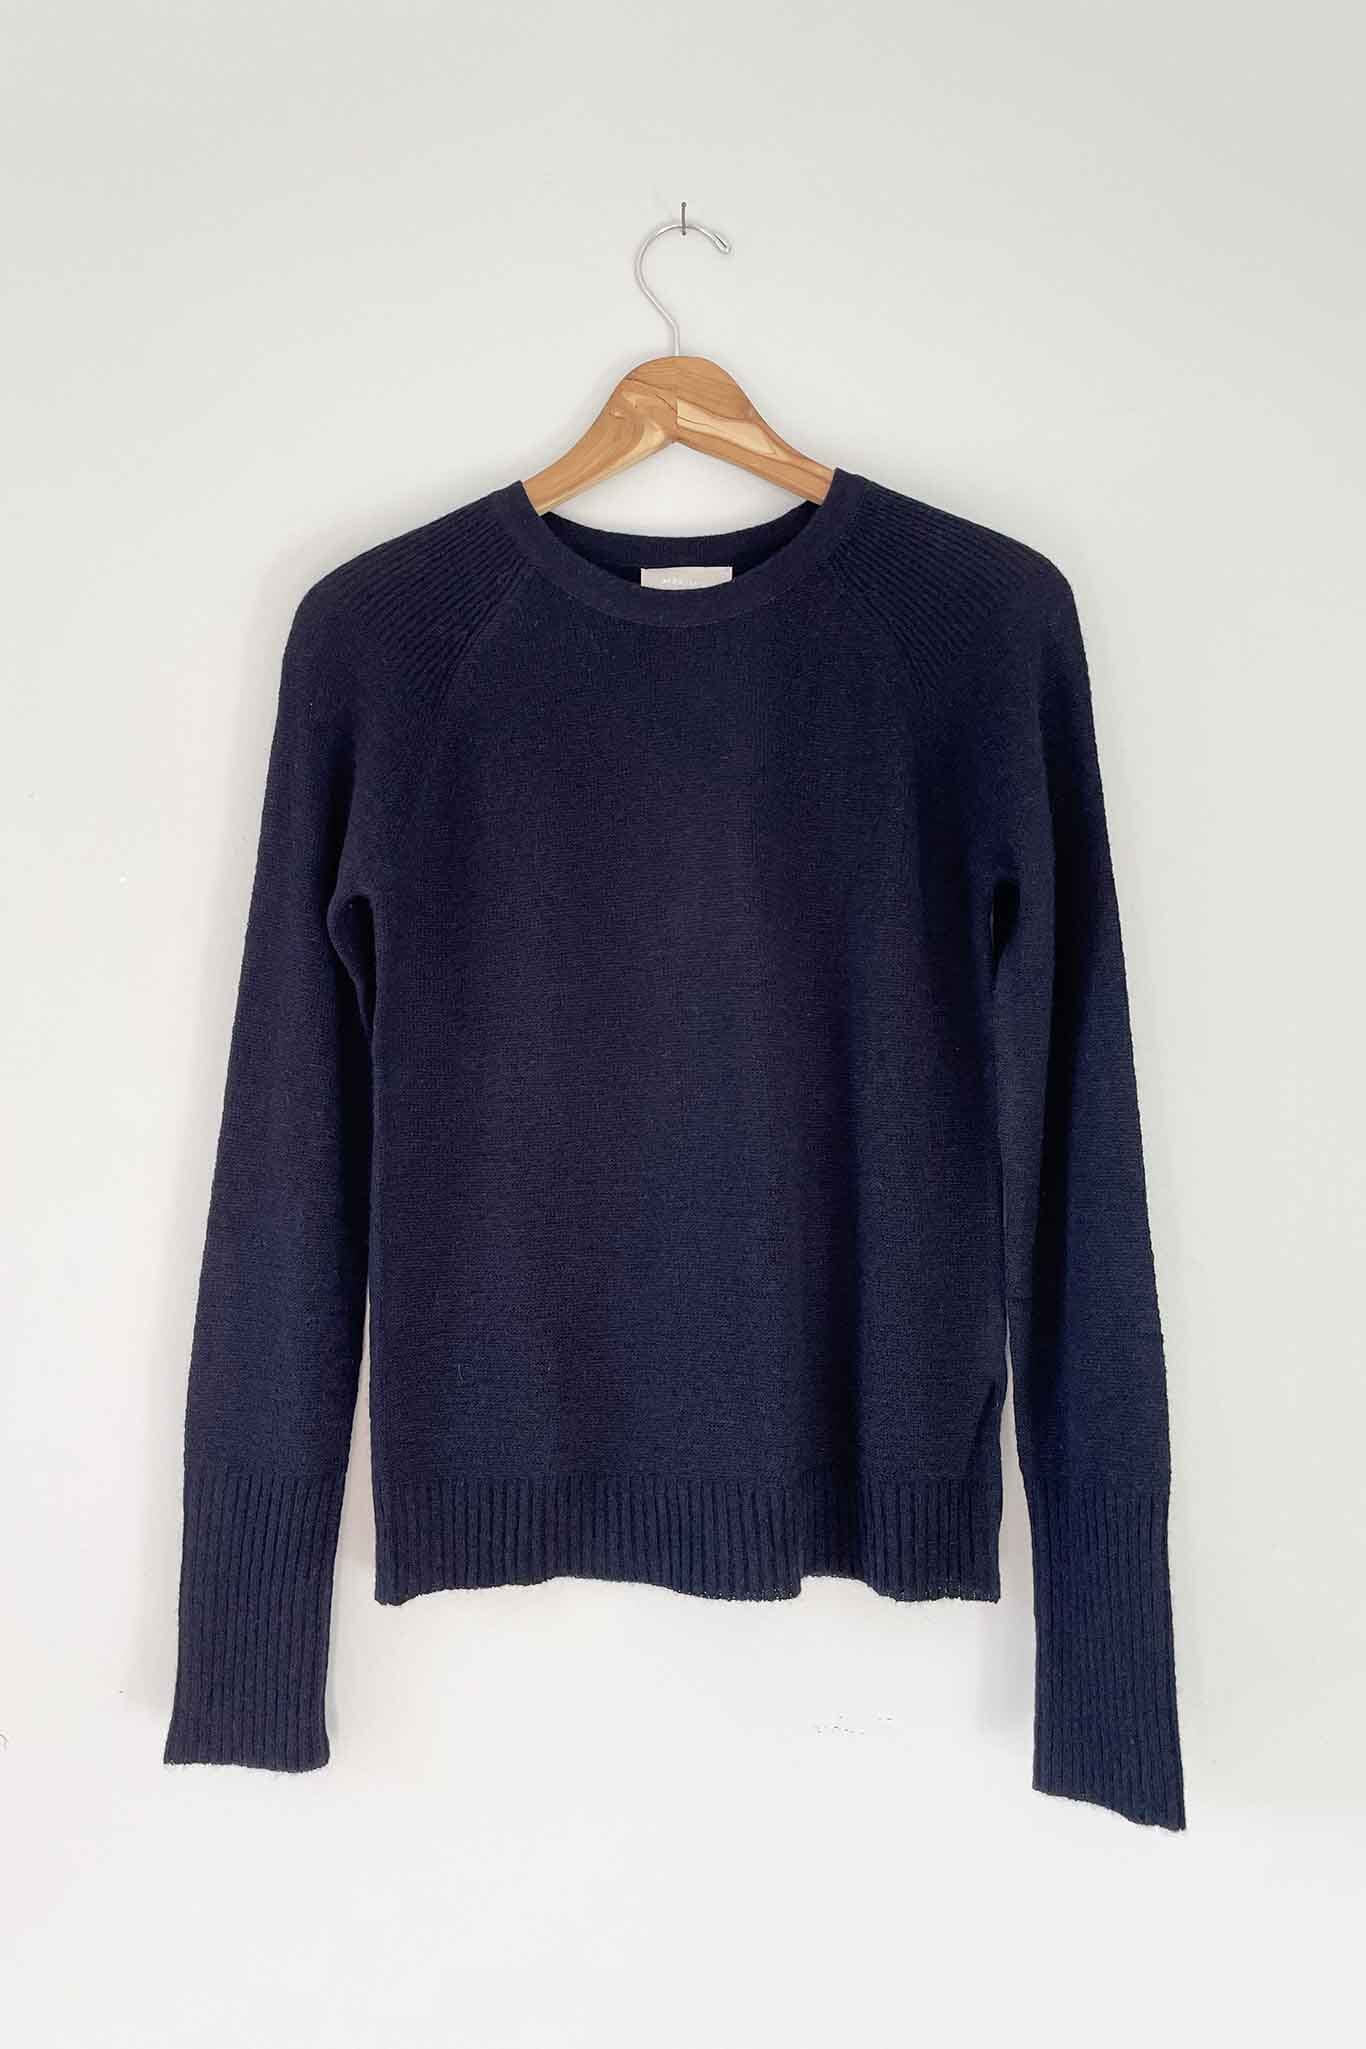 100% mongolian cashmere sweater. Lightweight summer sweater.